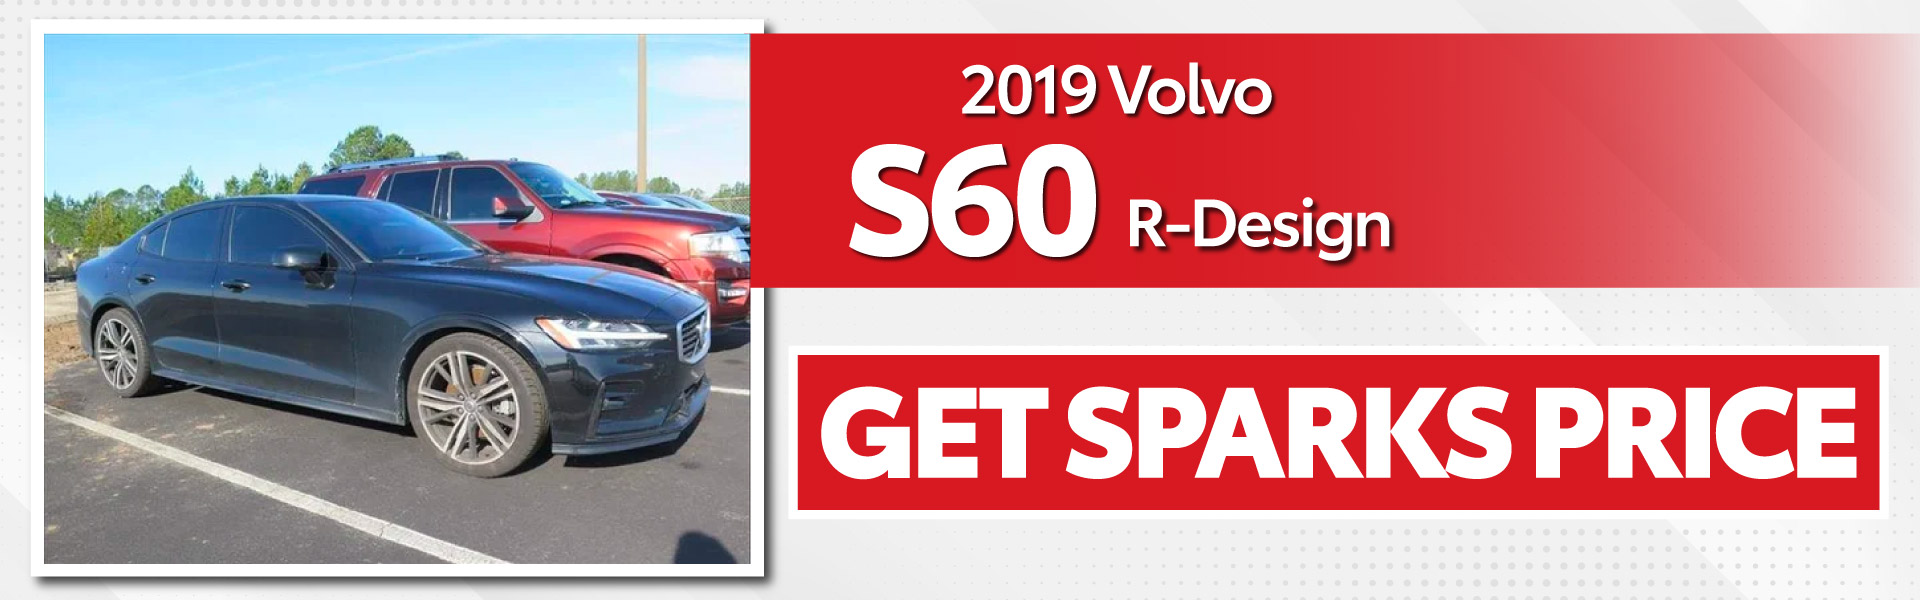 2019 Volvo S60 R-Design - Get Sparks Price